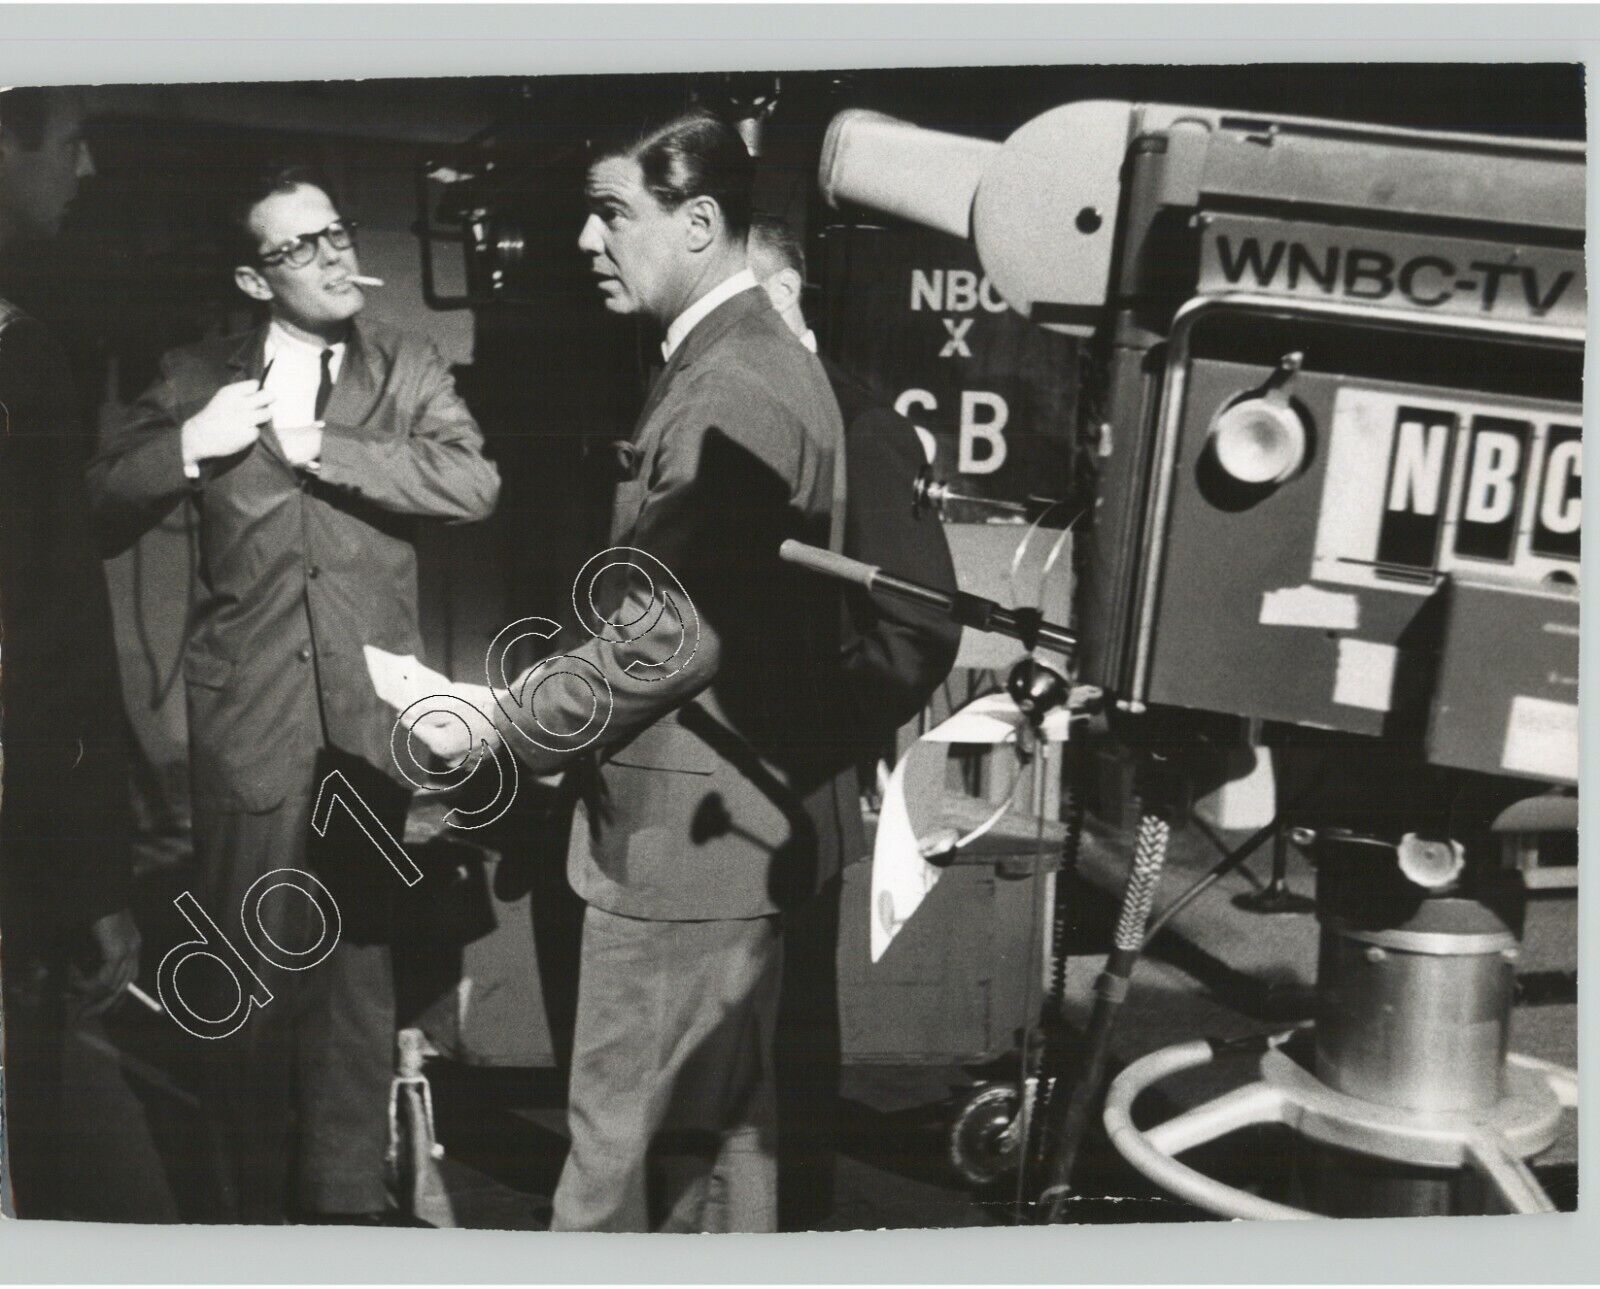 American TV PERSONNEL Near Video Cameras WNBC-TV Handsome Men 1950s Press Photo